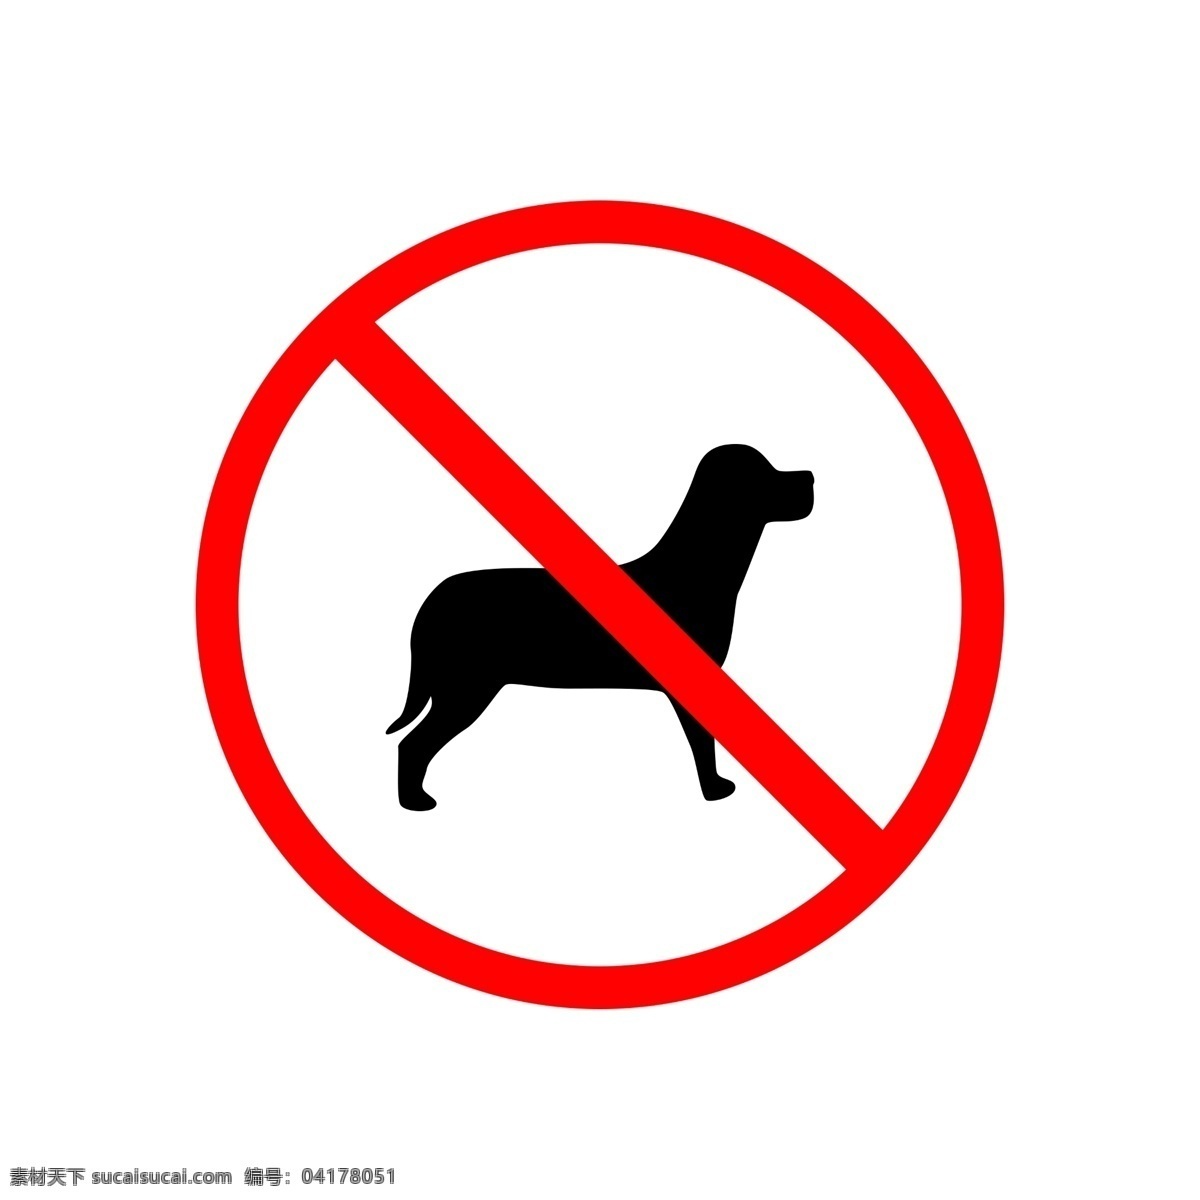 卡通 禁止 宠物 图标 宠物禁止入内 黑色小狗 卡通图案 不得入内 禁止入内 提示牌 禁止进入 红色禁止令